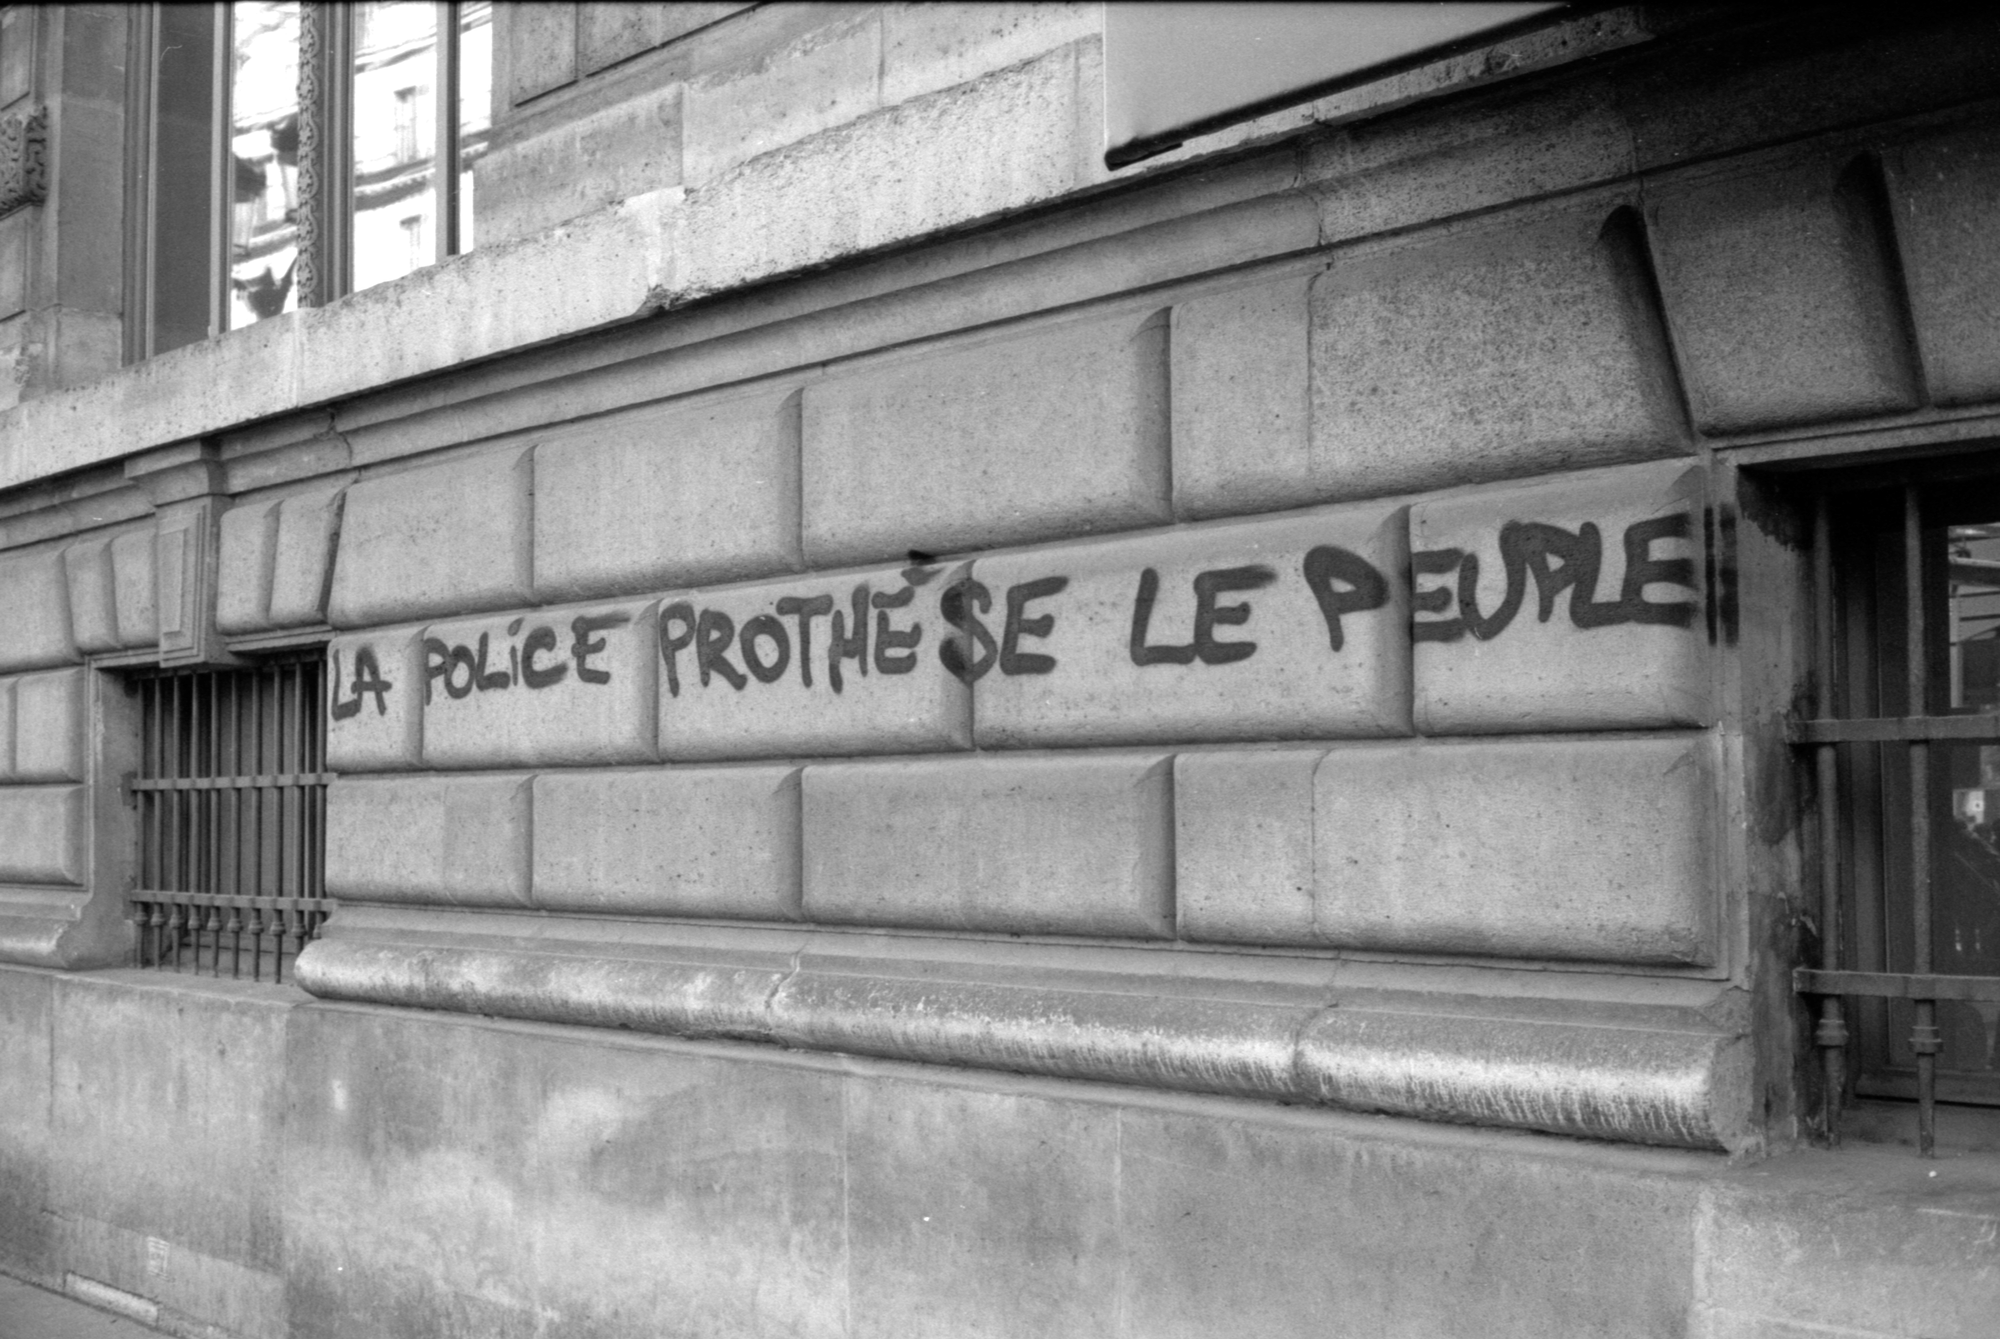 La police prothèse le peuple, Paris, April 13th, 2023. Ilford FP4+ / Canon LTM 50mm f1.4 / Leica CL